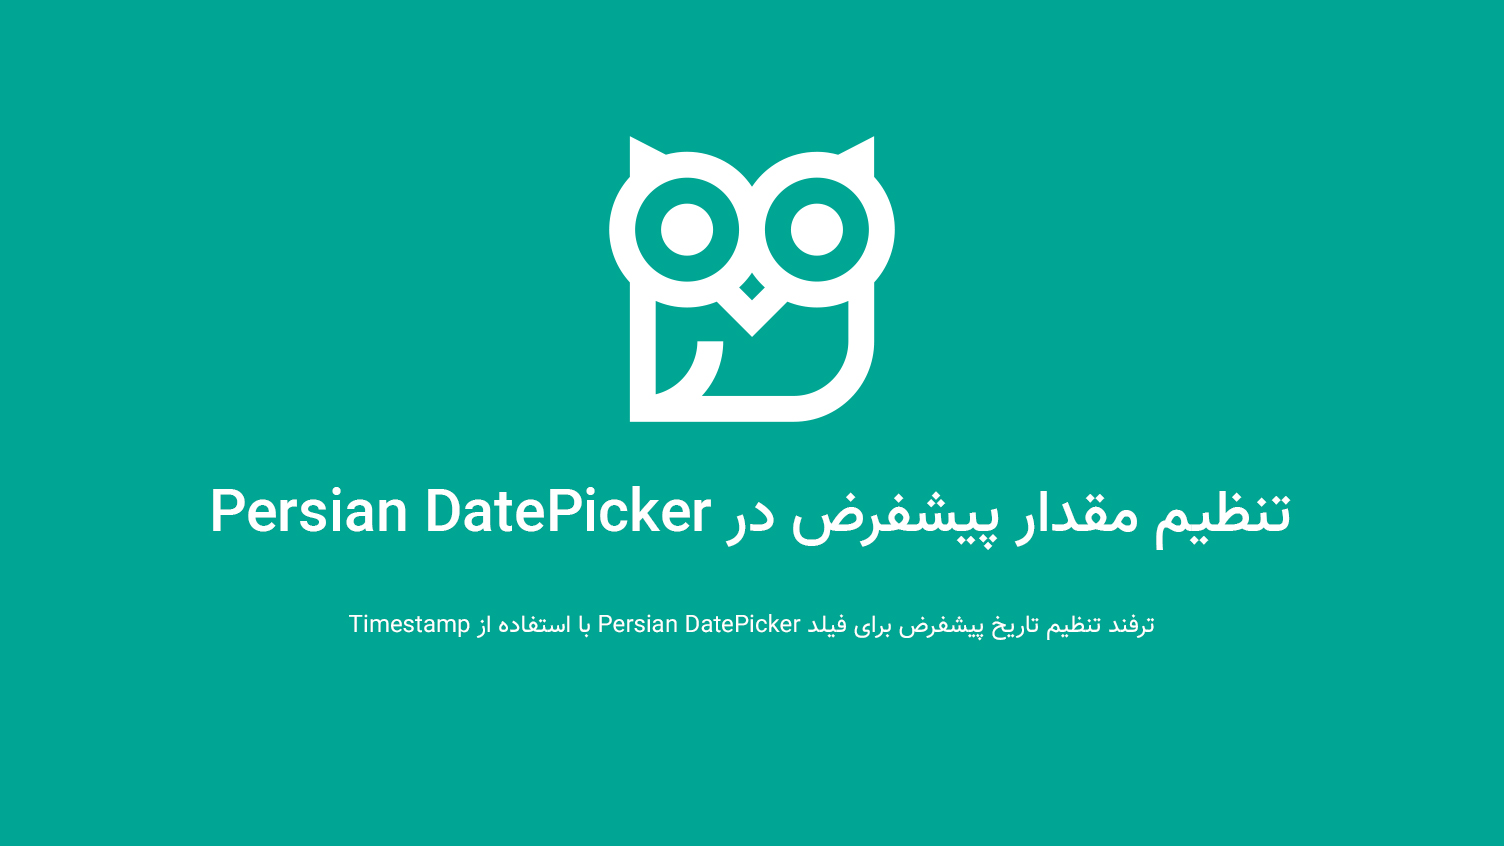 تنظیم مقدار پیشفرض در Persian DatePicker